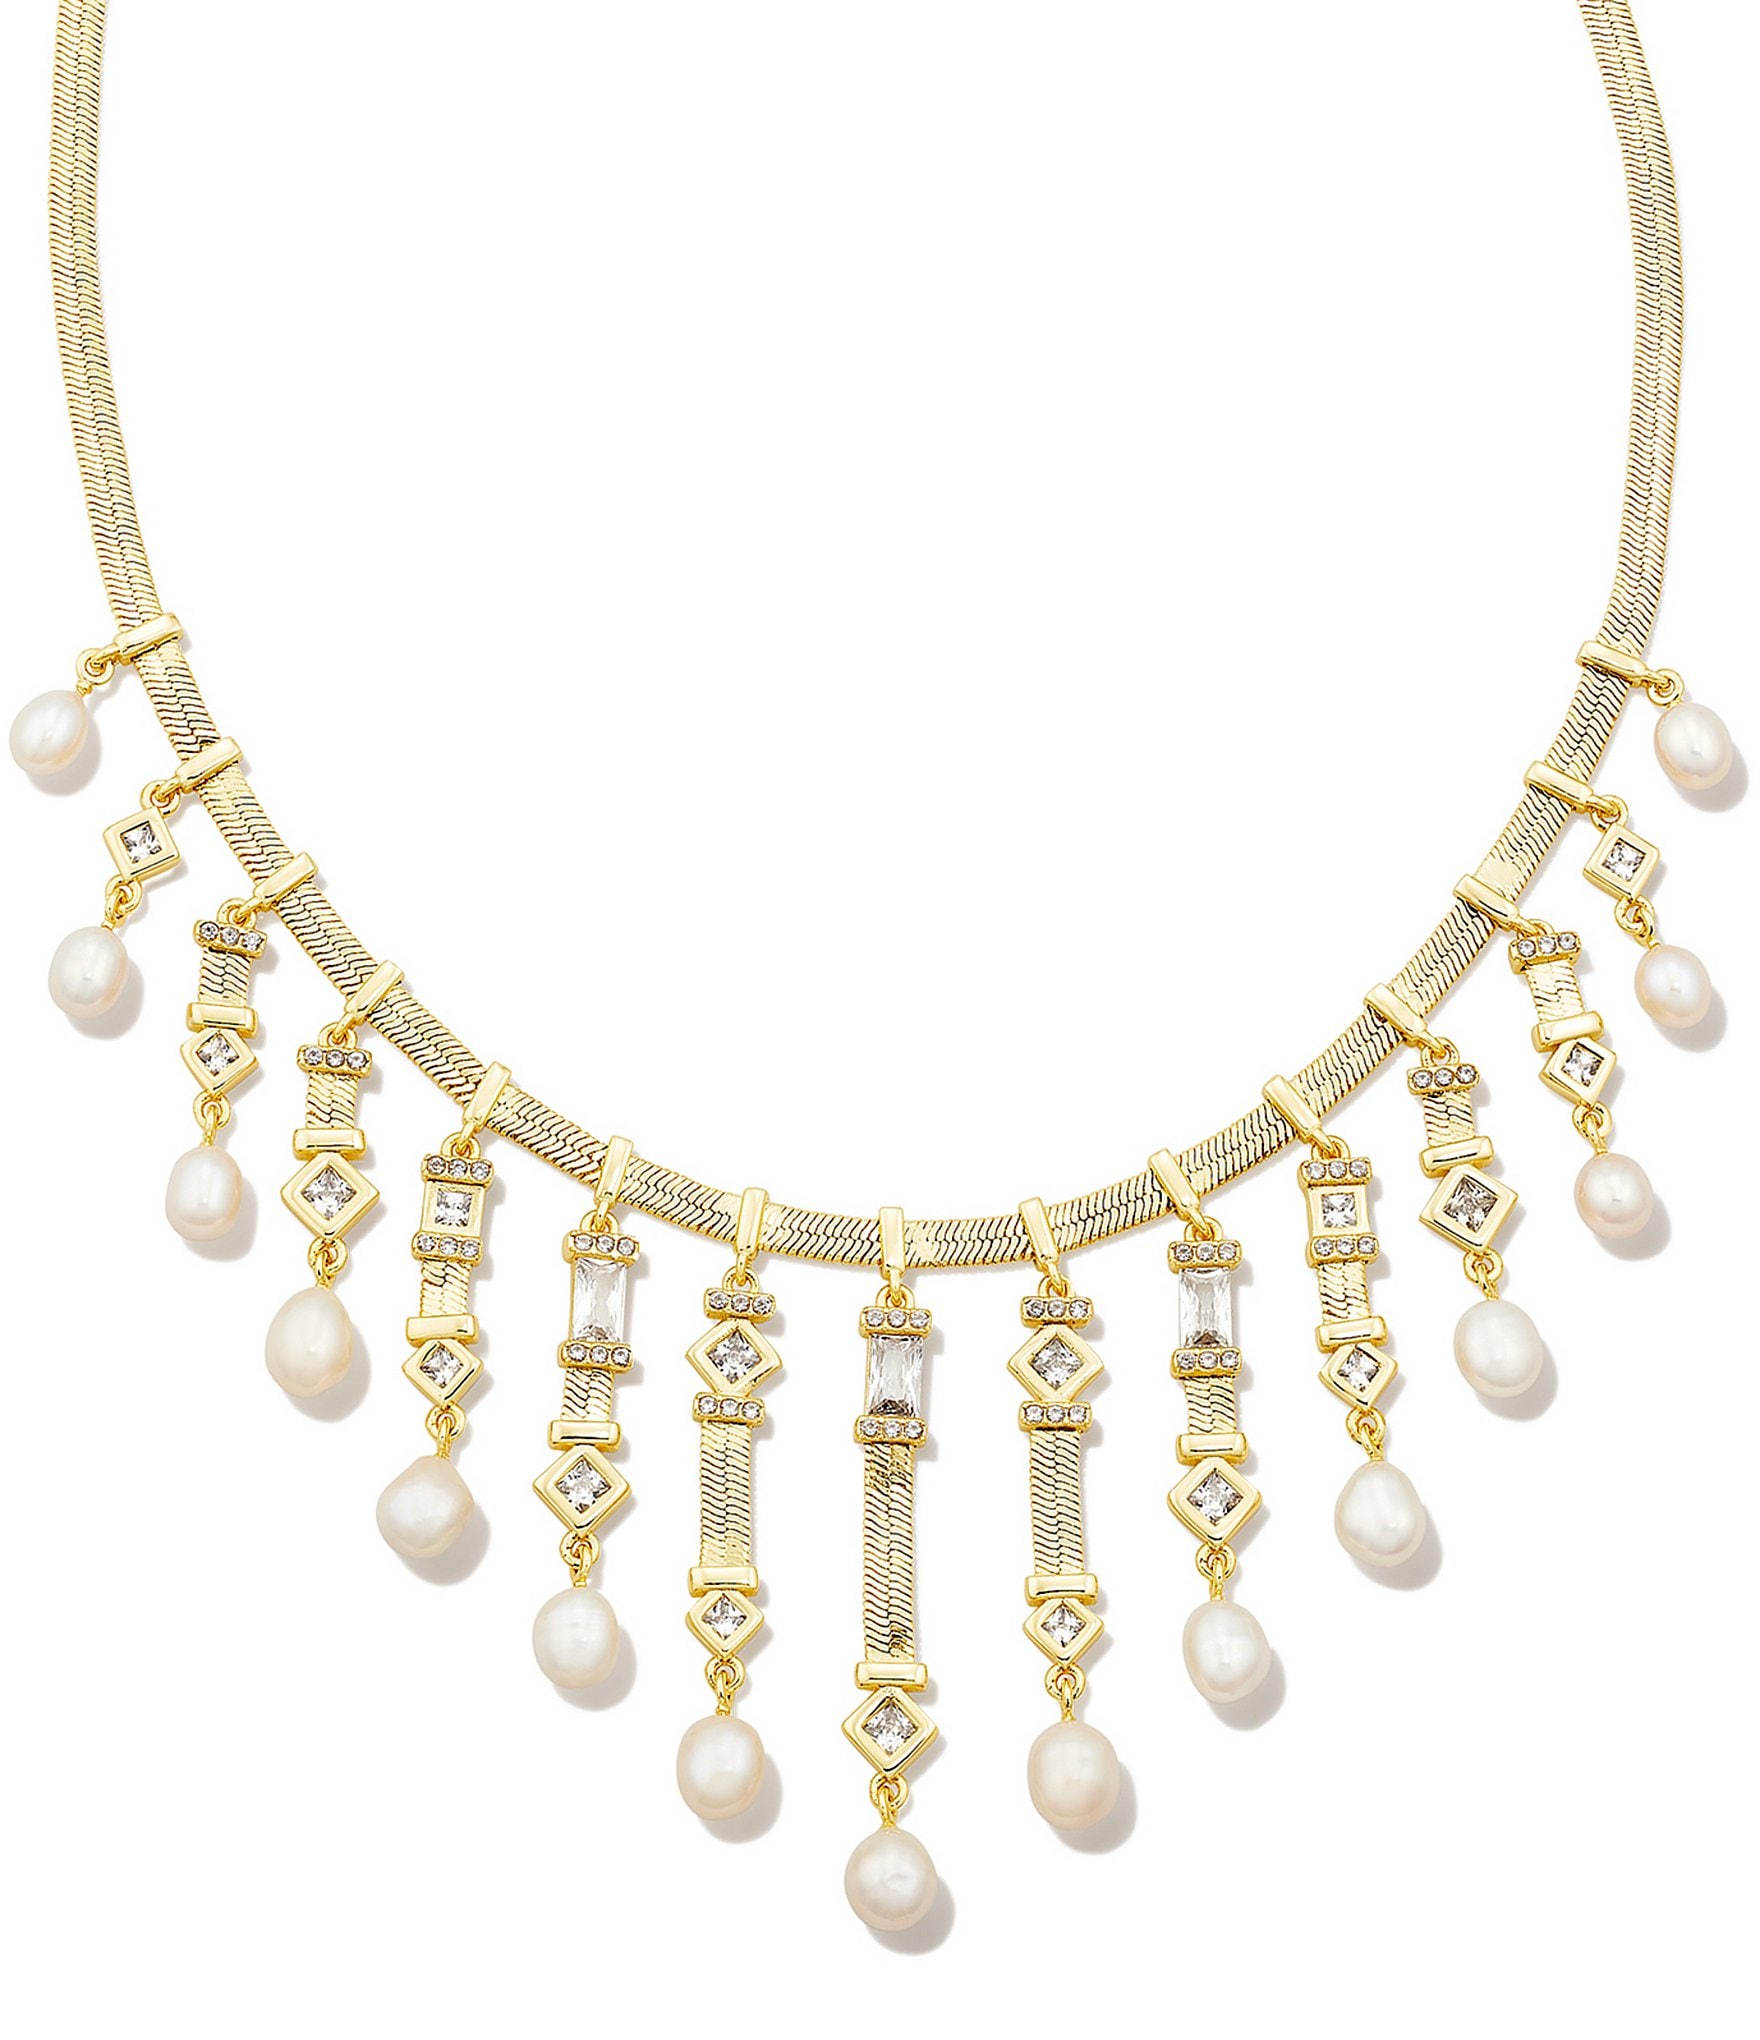 Whitney Statement Necklace in Black Contrast - Kendra Scott Jewelry |  Necklace, Jewels, Jewelry